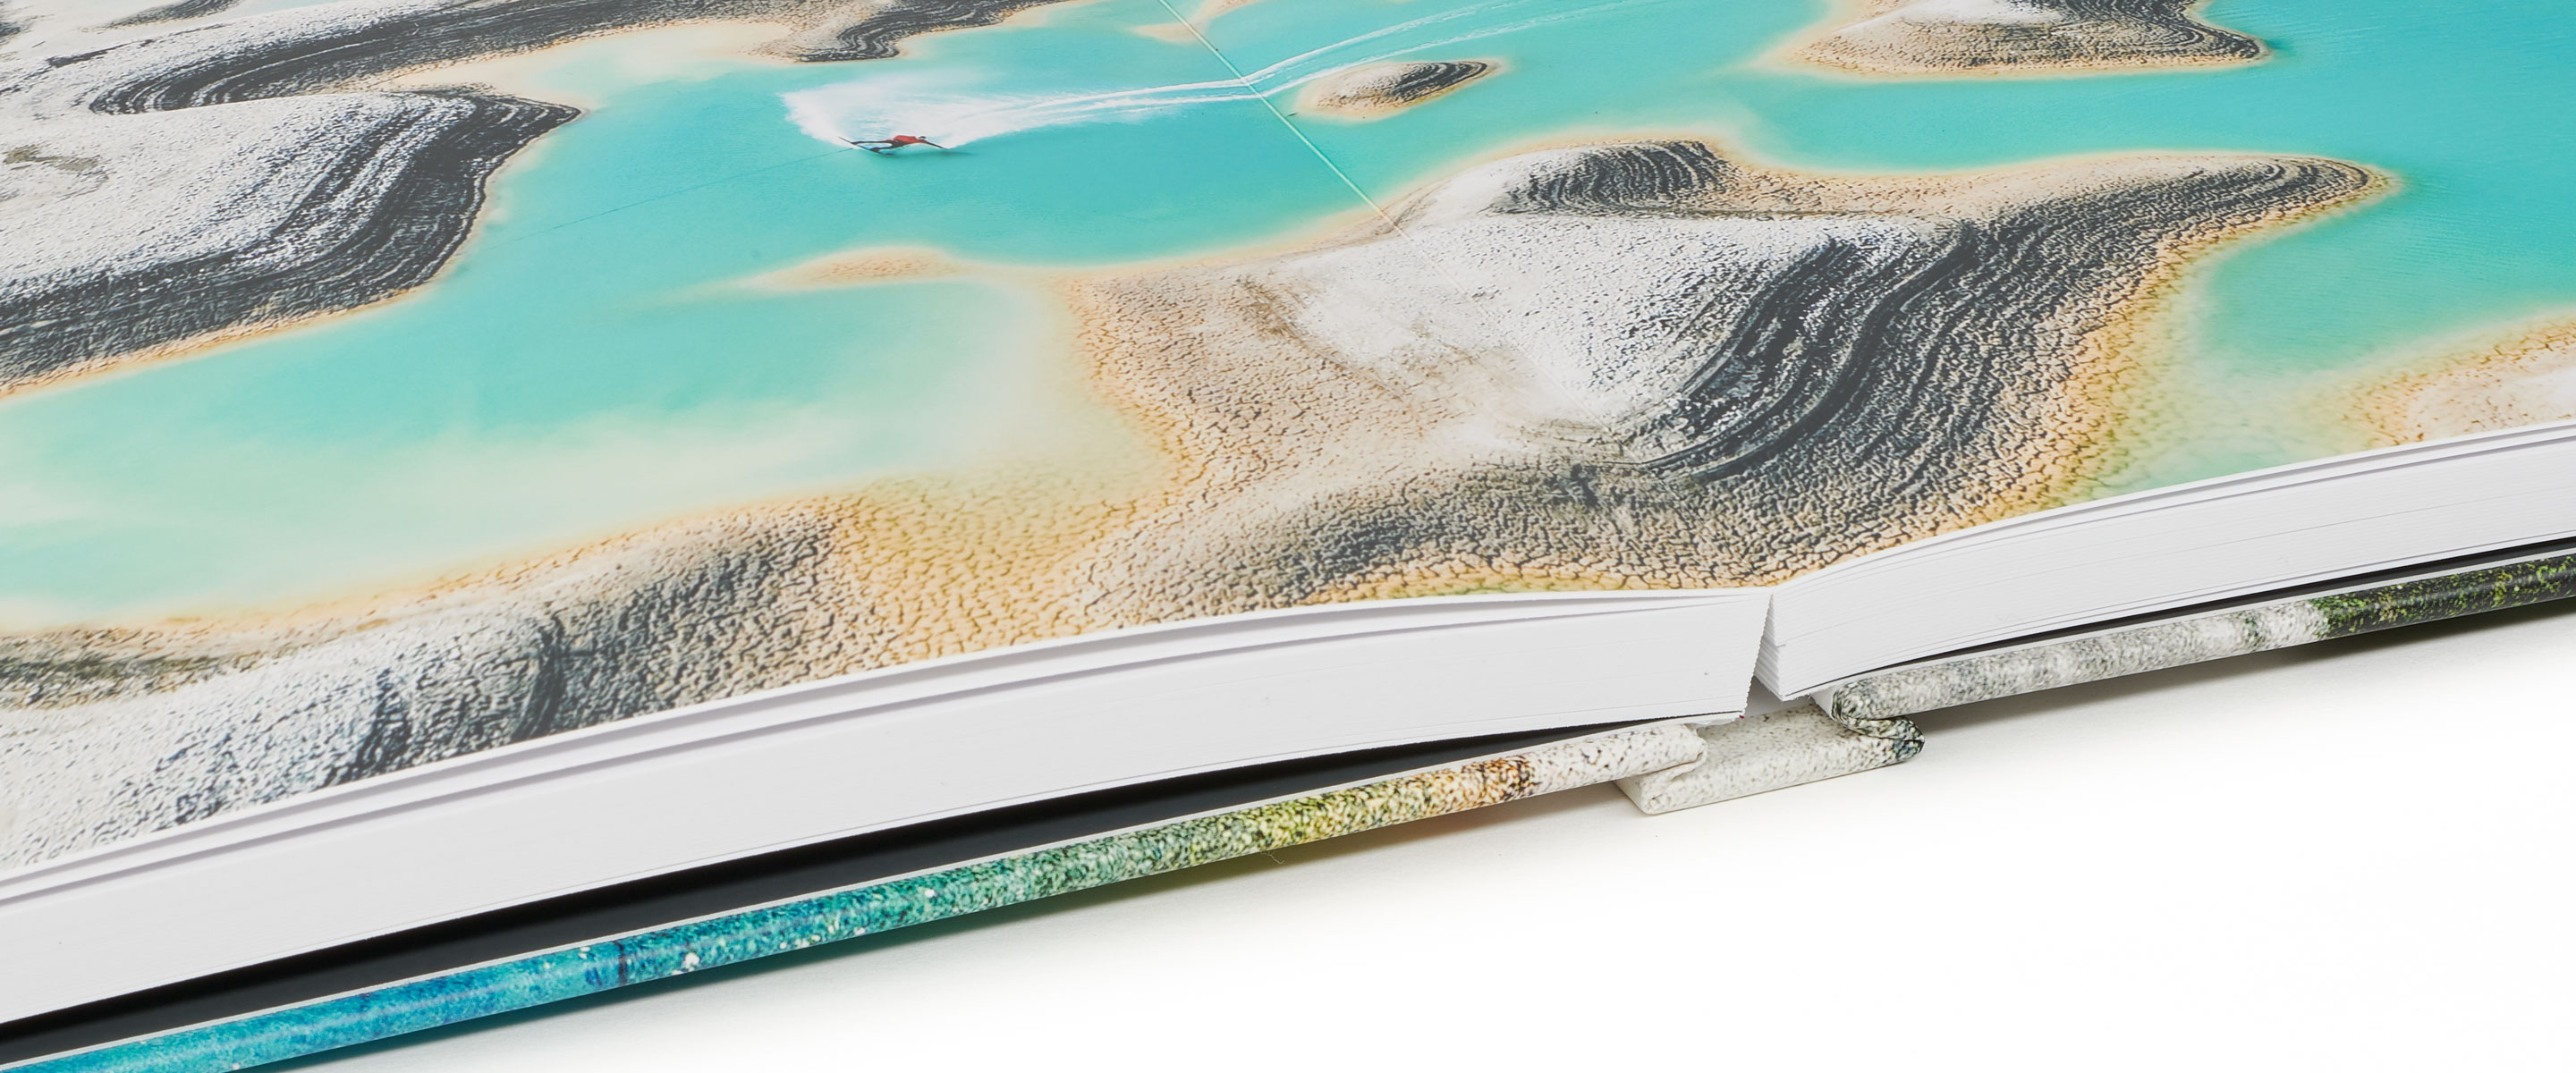 Livre d'album photo intérieur transparent durable, fabrication